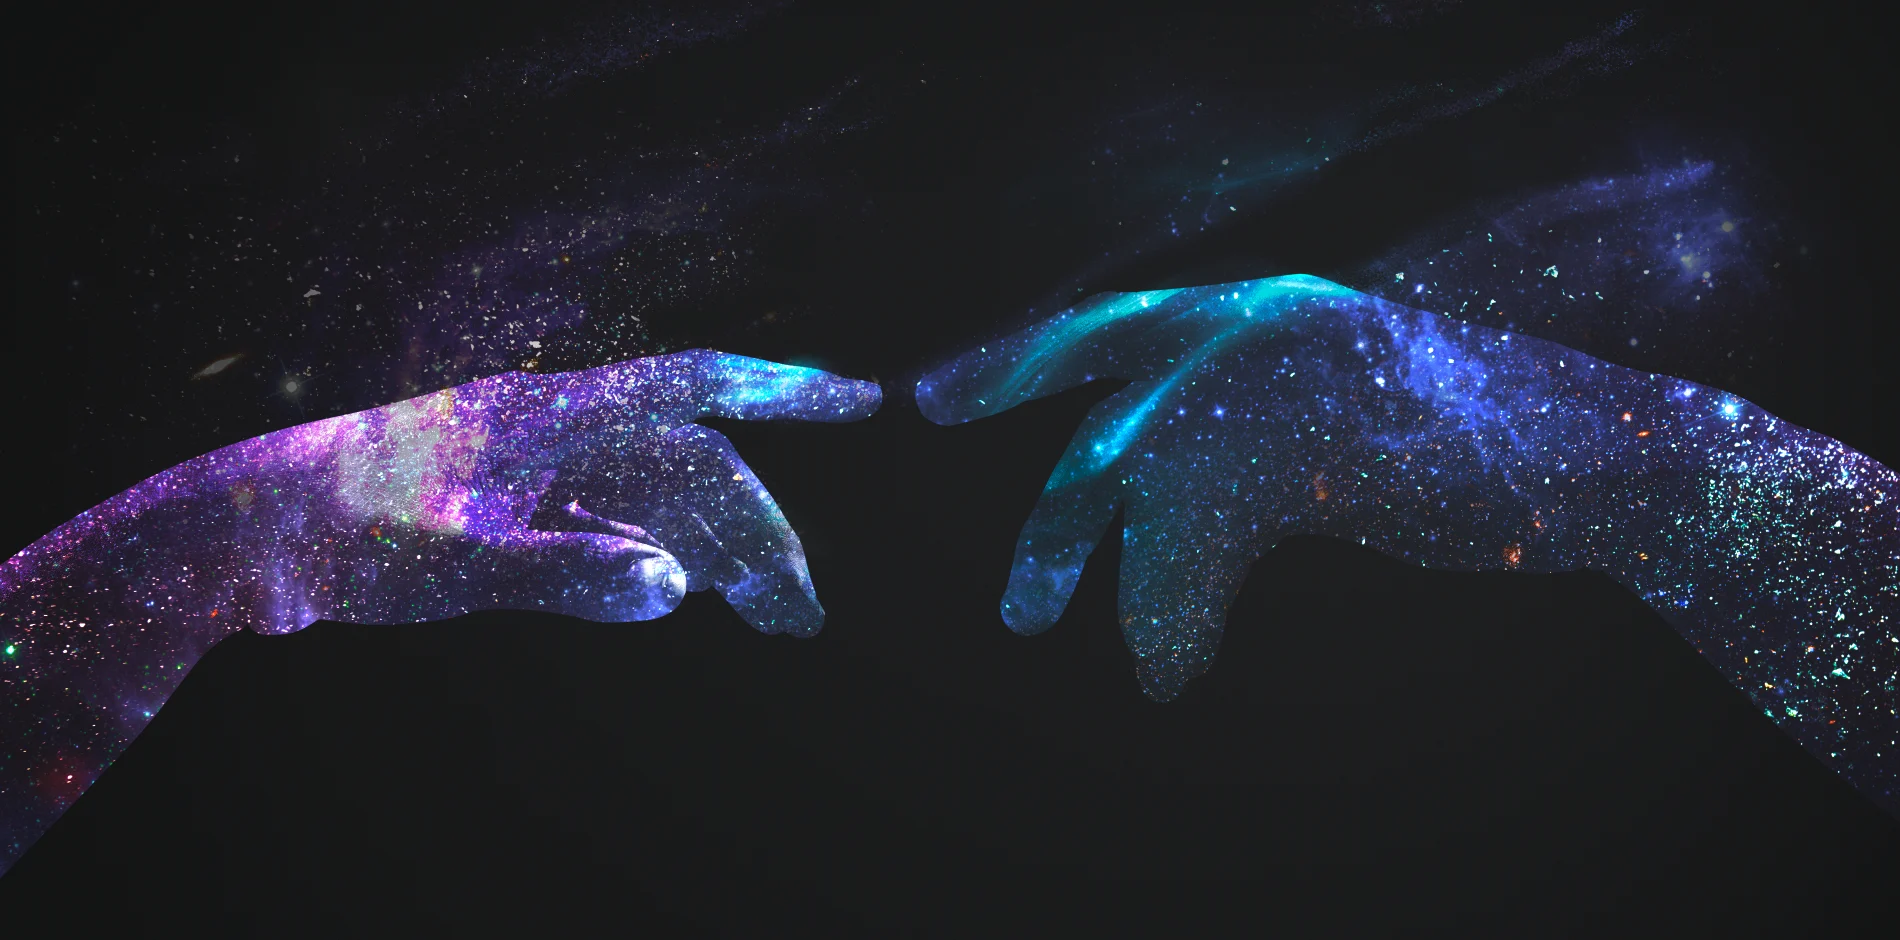 这是一张创意图片，展示了两只手指尖相对，呈现出宇宙星空的视觉效果，彩色星云与黑色背景形成鲜明对比，充满神秘感。